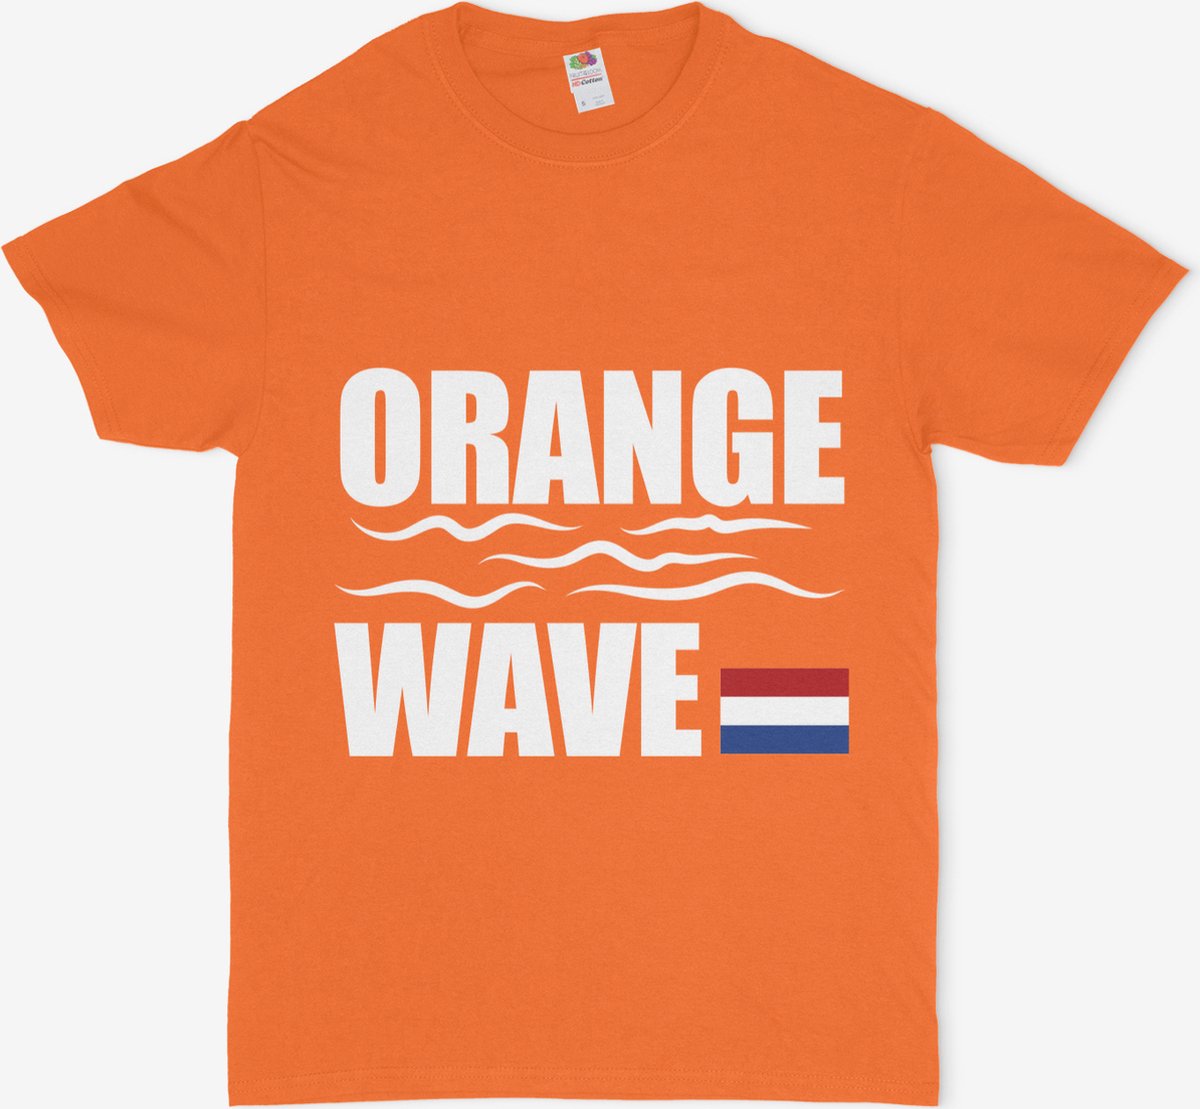 Fruit of the Loom SC230-Tshirt-Oranje-Formule 1-Orange Day-Voetbal-Max Verstappen-Zandvoort-Koningsdag